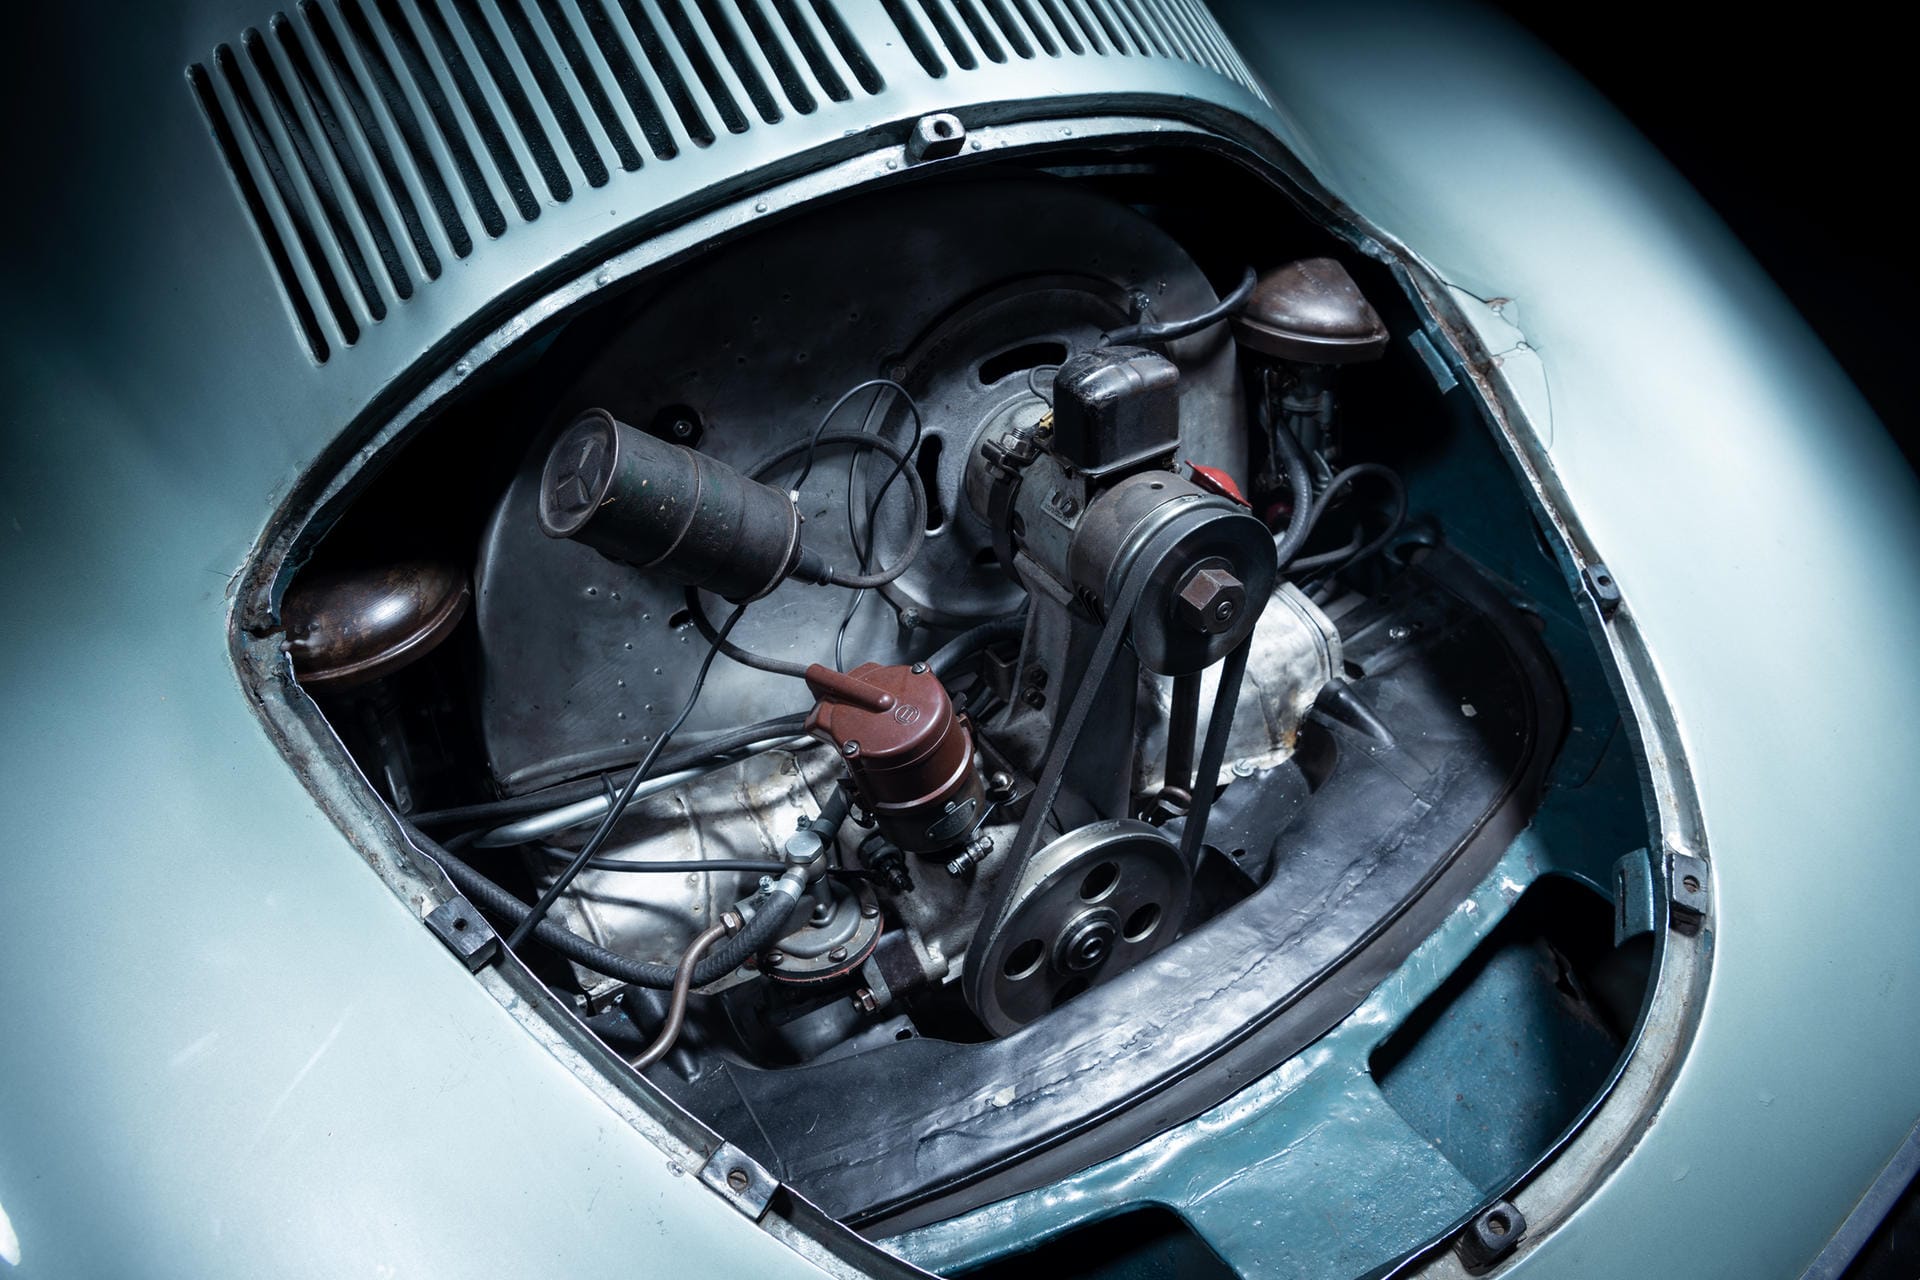 Vierzylinder-Boxer: Der Motor leistete zunächst 35 PS, dann 40 PS.